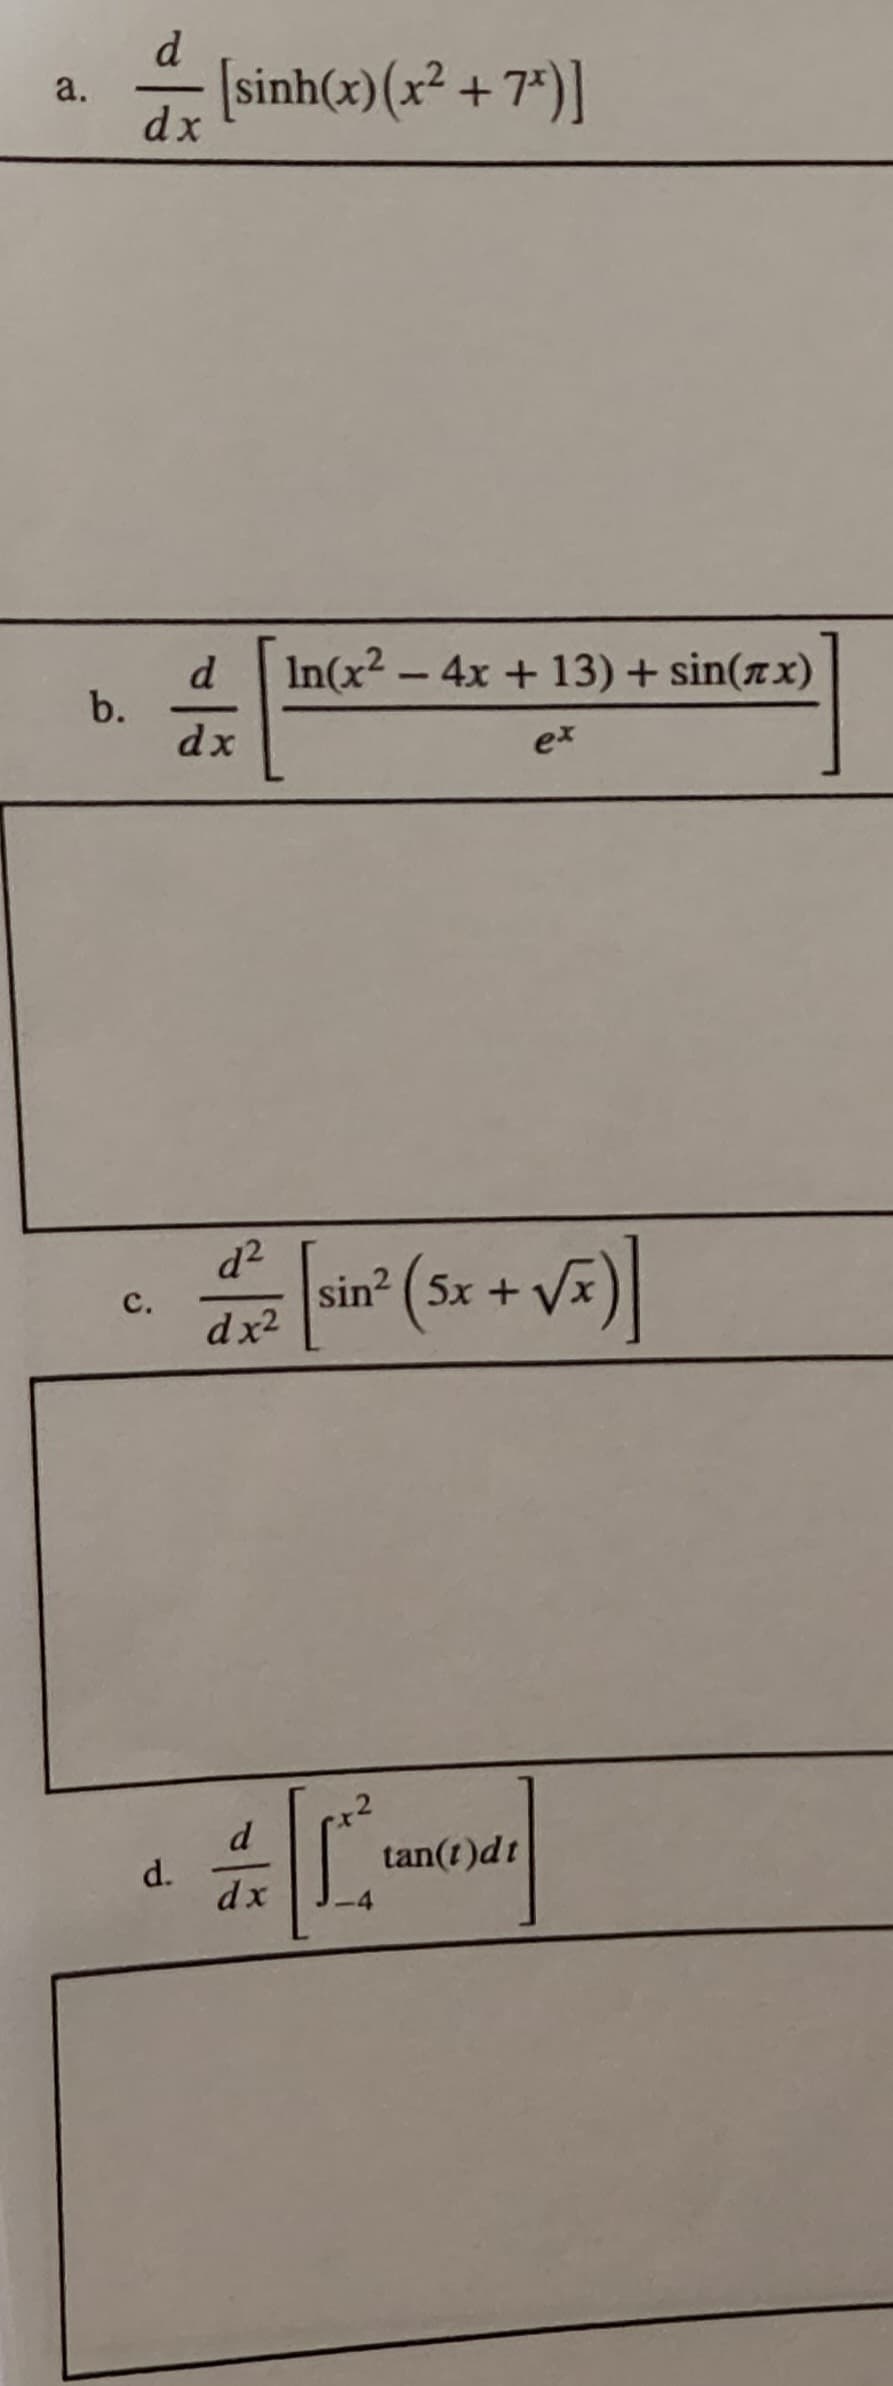 d.
a.
dx
sinh(x)(x² + 7*)]
d In(x2-4x +13) + sin(z x)
b.
dx
ex
d2
sin? ( 5x +
с.
dx2
d
d.
dx
tan(t)dt
